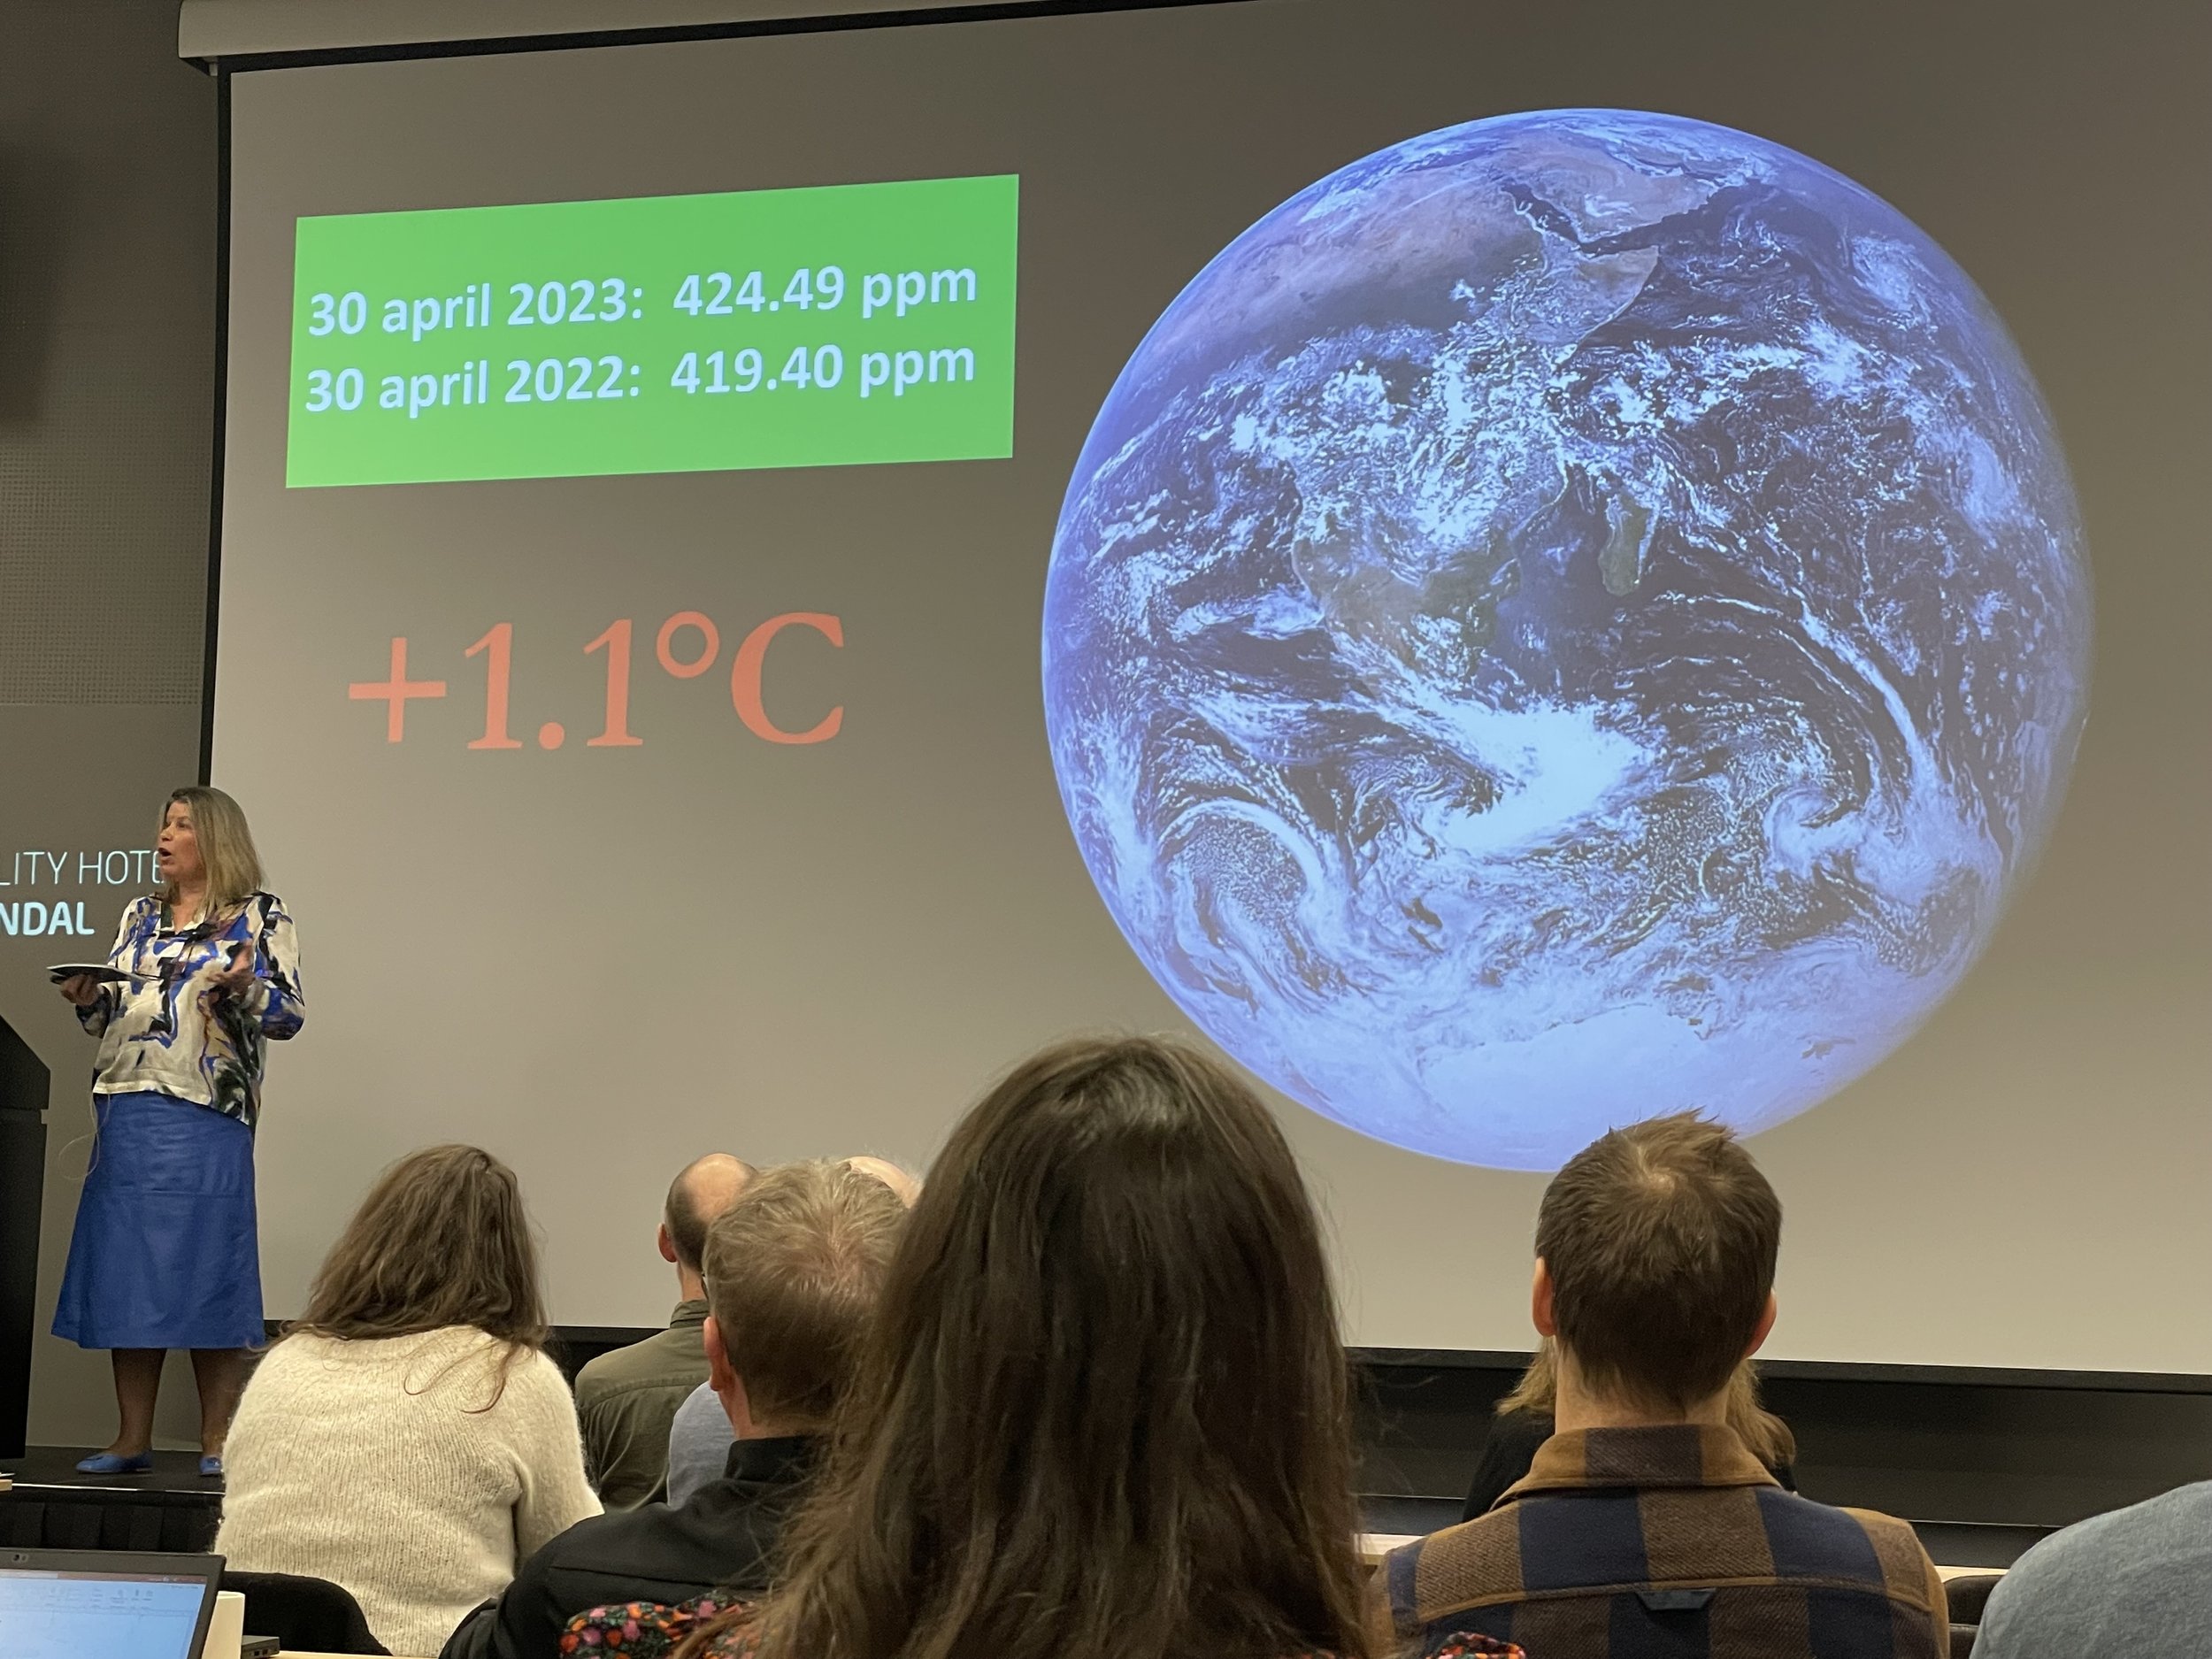  Kikki Kleiven frå Bjerknessenteret heldt opningsinnlegget. Der skisserte ho kor Noreg og verda står med tanke på å oppfylle klimamåla for 2030. (foto: Idun A. Husabø) 